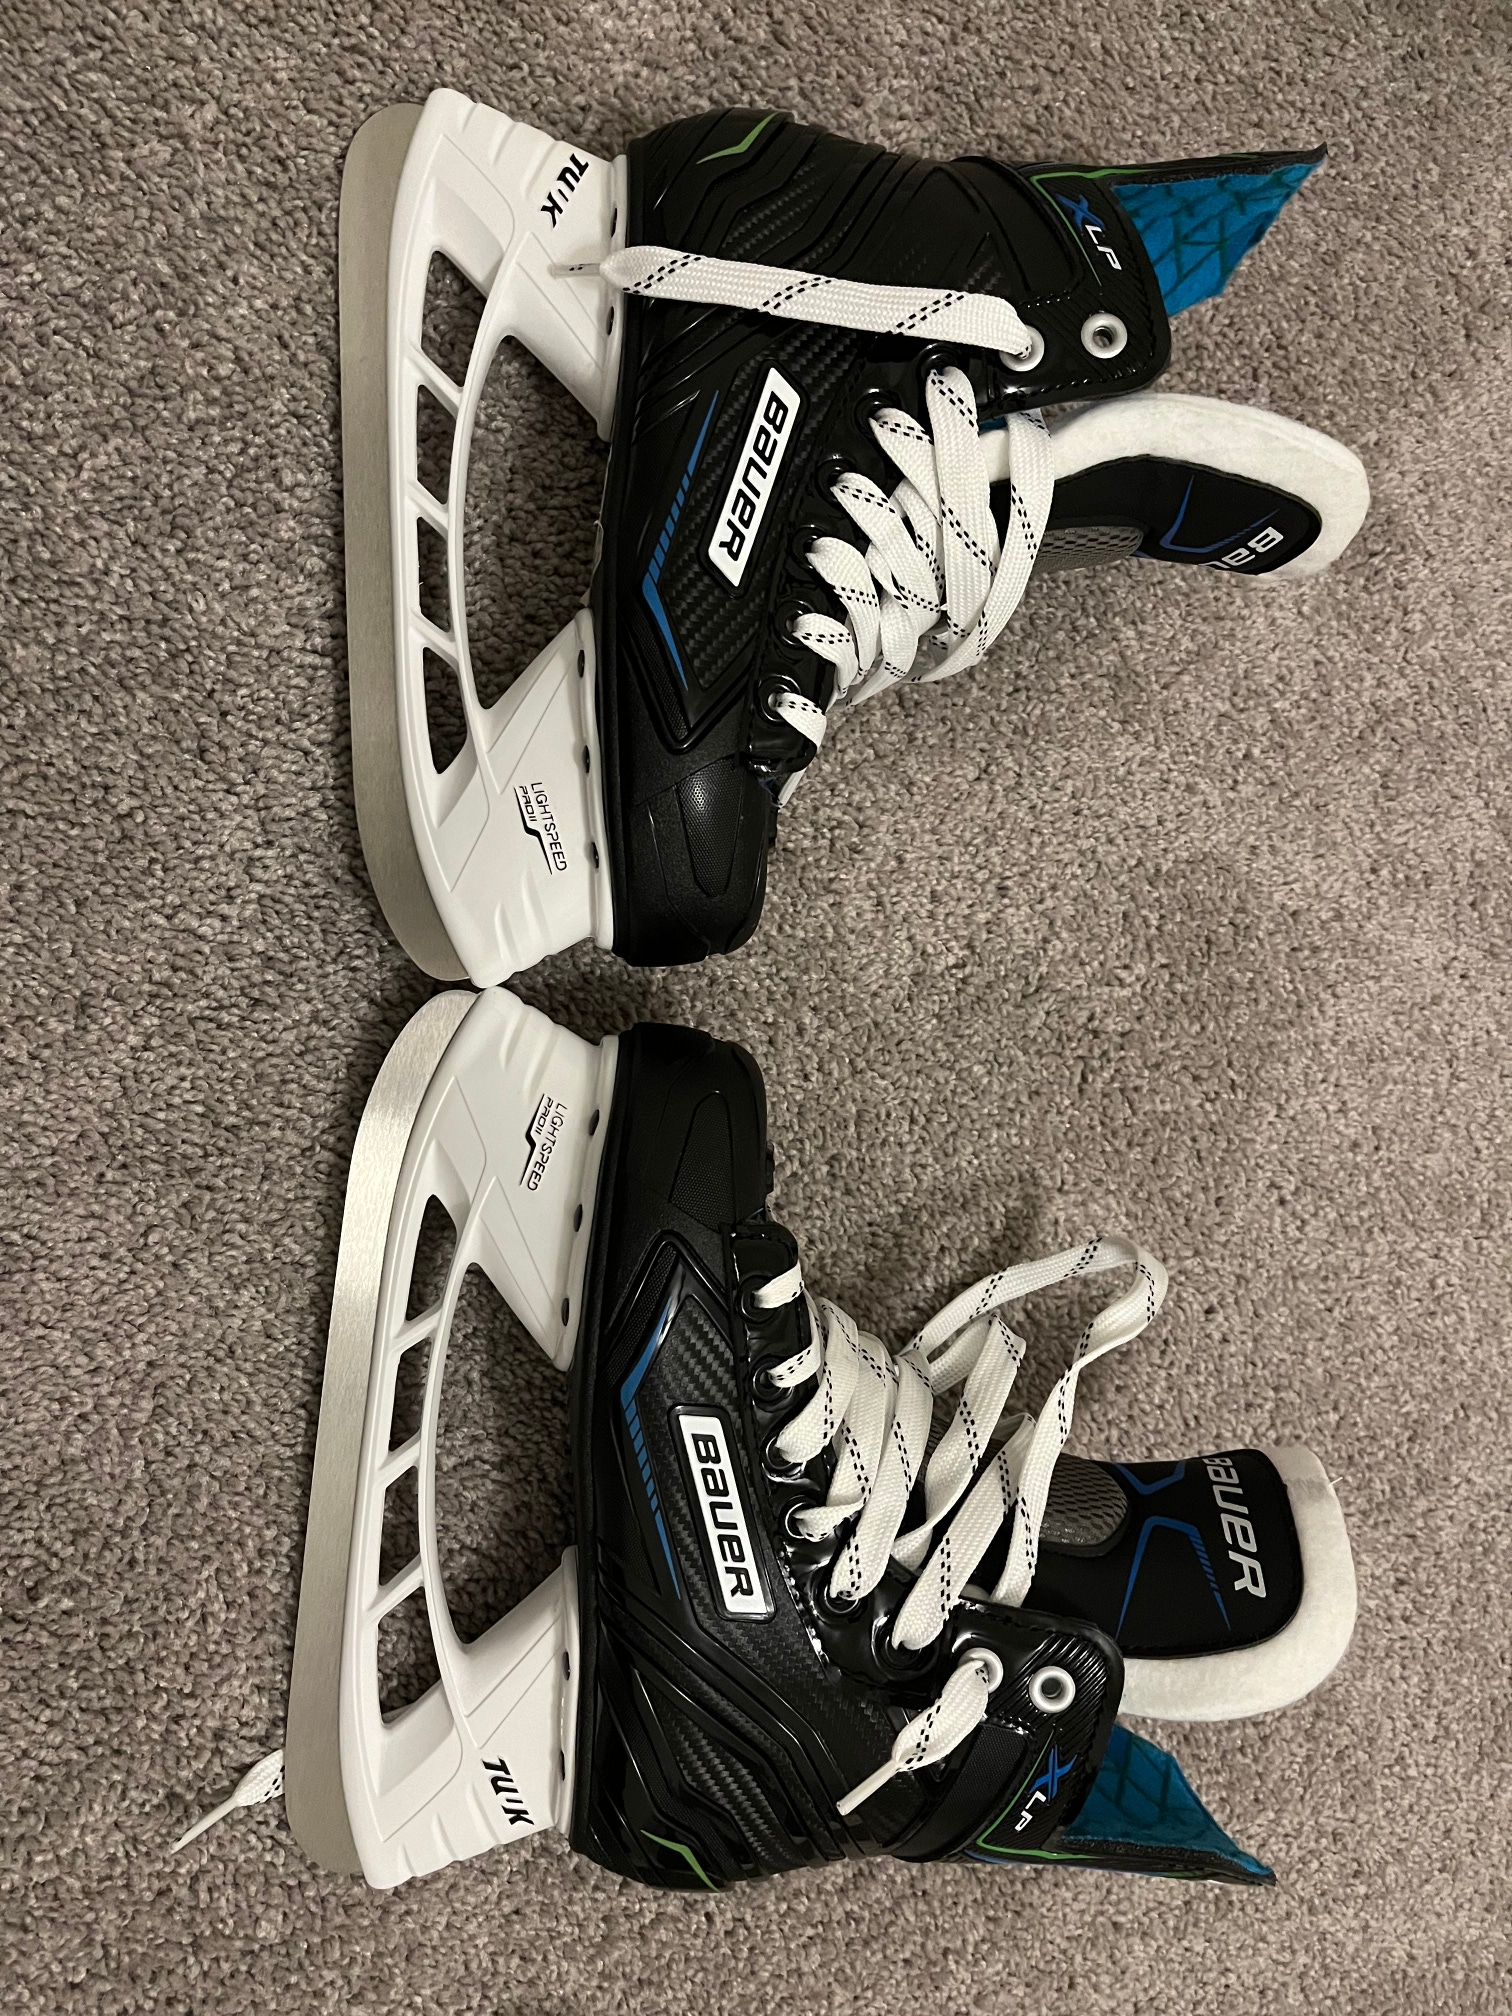 New Bauer Inline Skates Regular Width Size 2